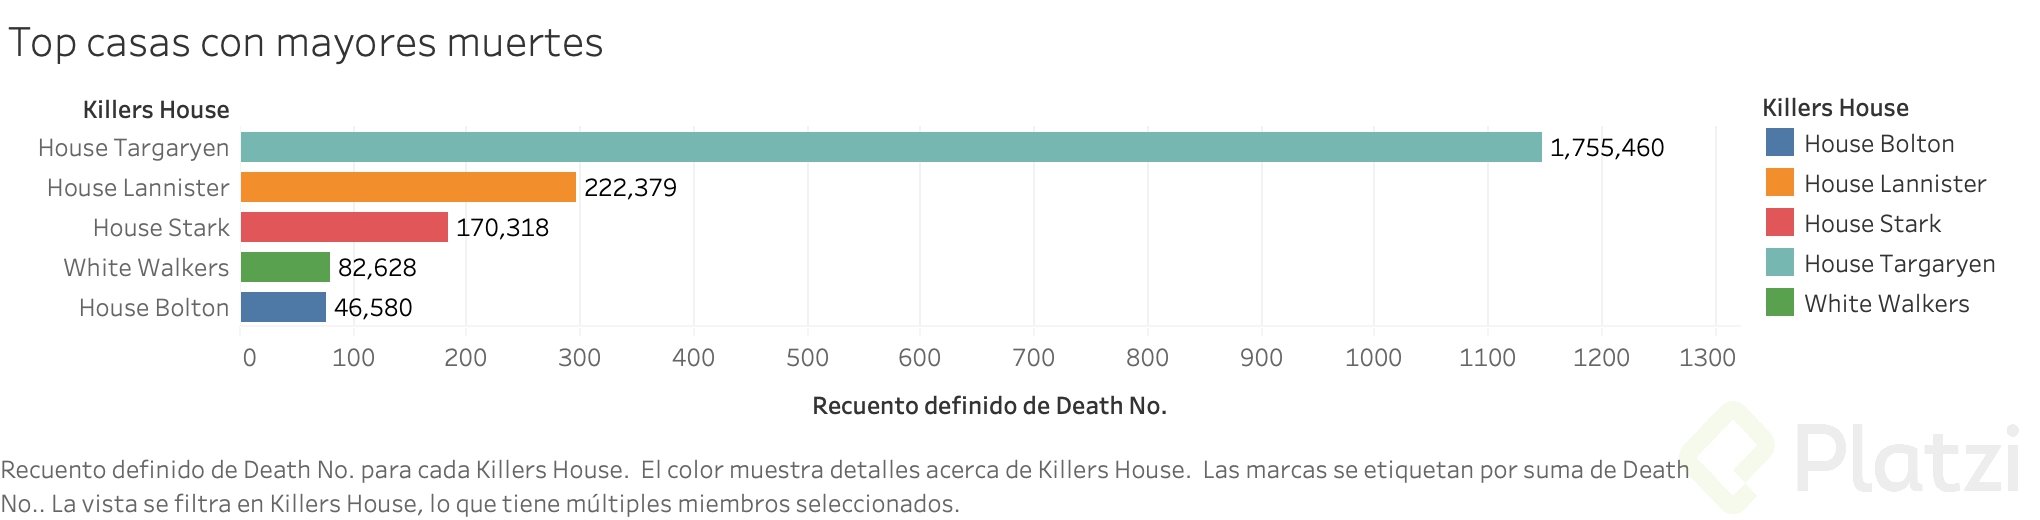 Top casas con mayores muertes.png